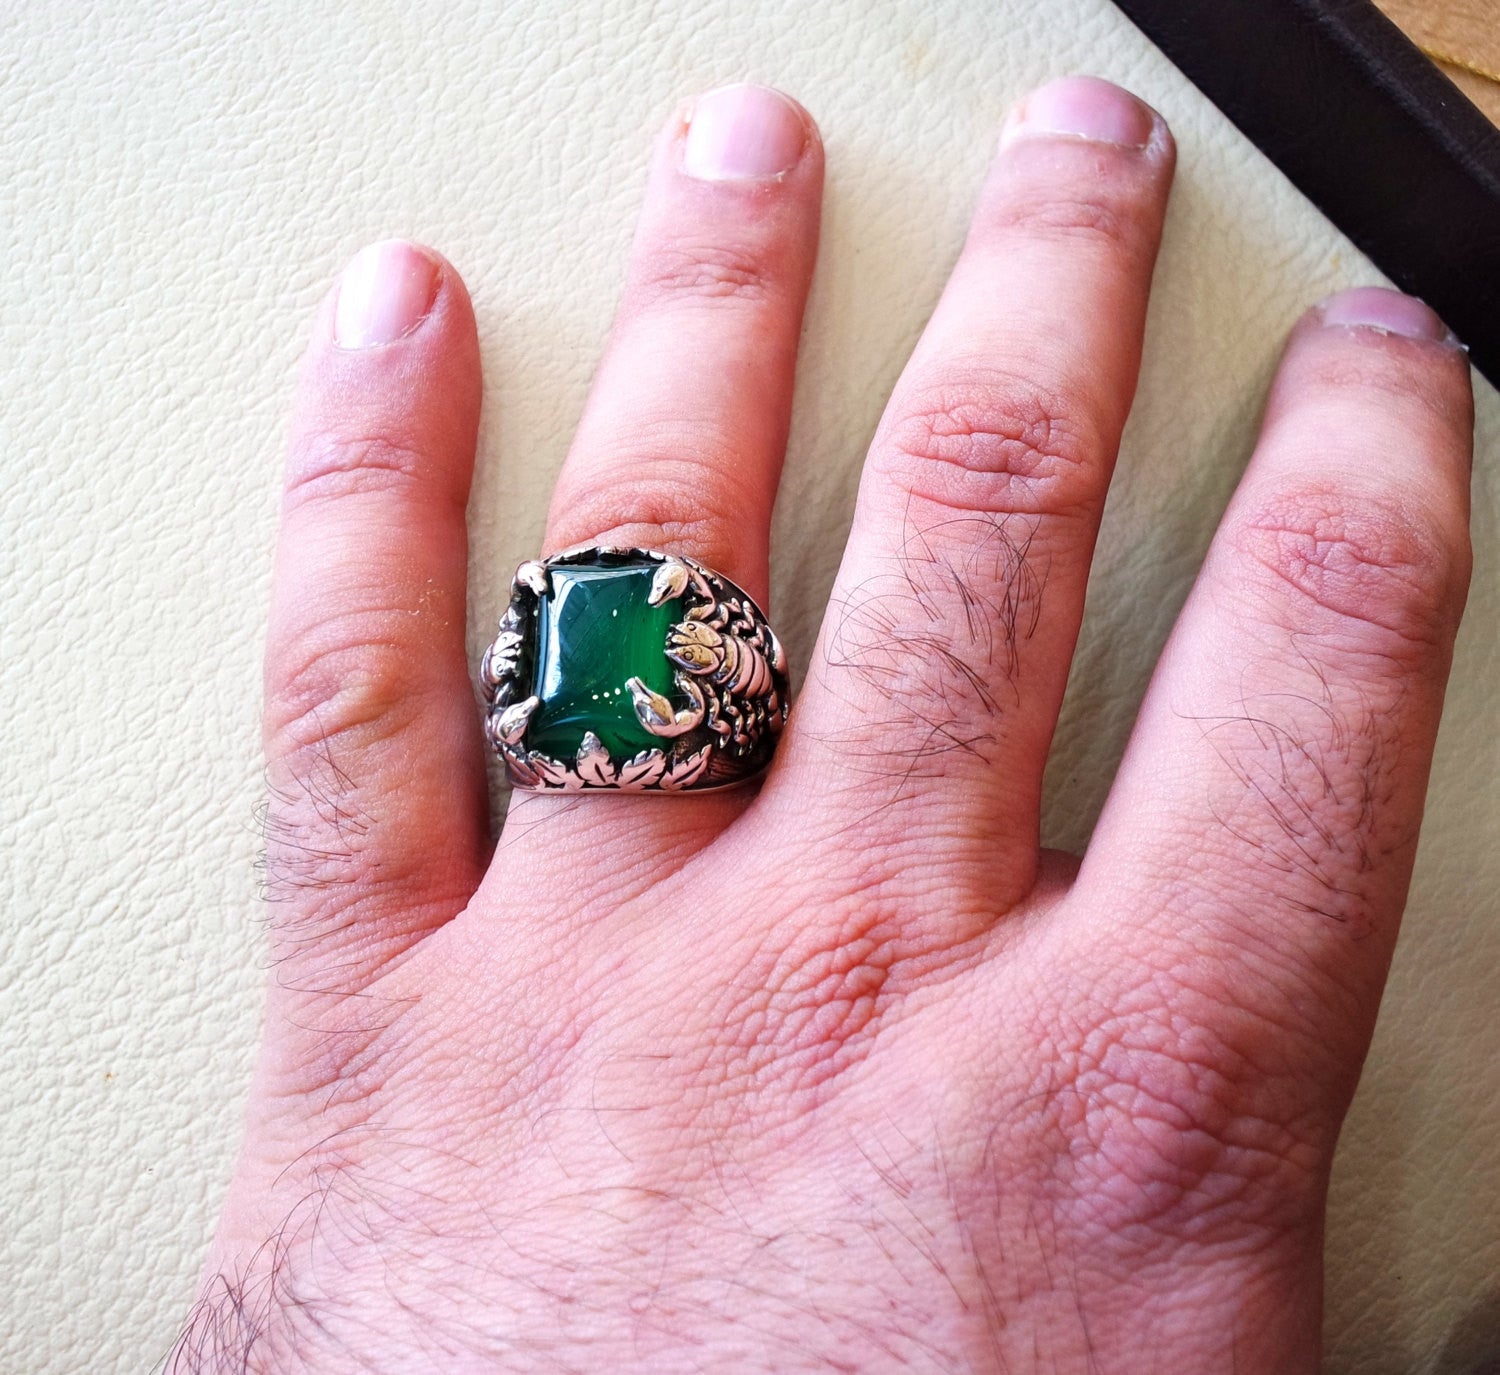 énorme Scorpion argent sterling 925 énorme anneau toute taille rectangulaire vert Aqeeq Agate Moyen Orient Vintage bijoux à la main expédition rapide